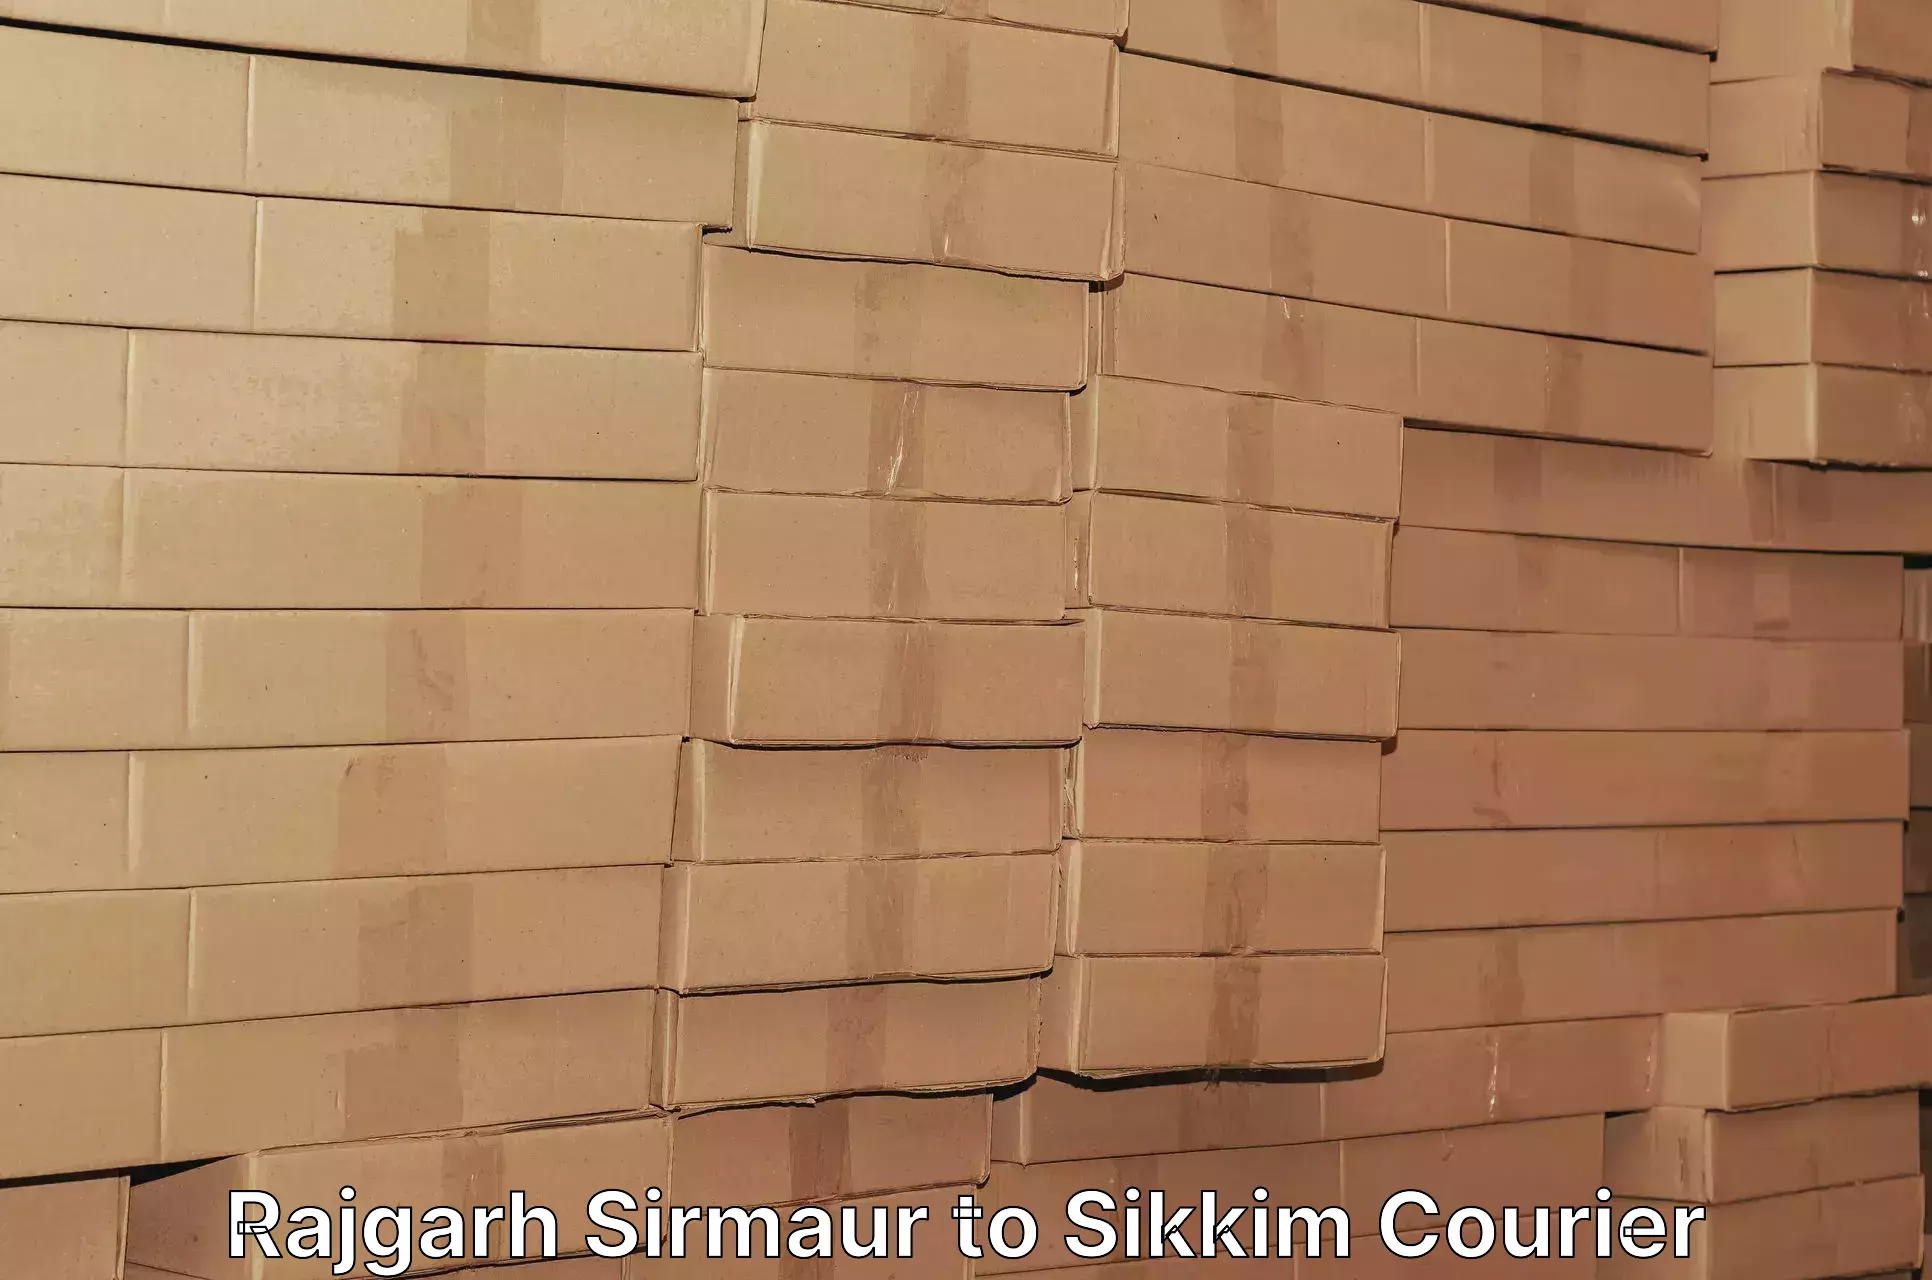 Urban courier service Rajgarh Sirmaur to NIT Sikkim